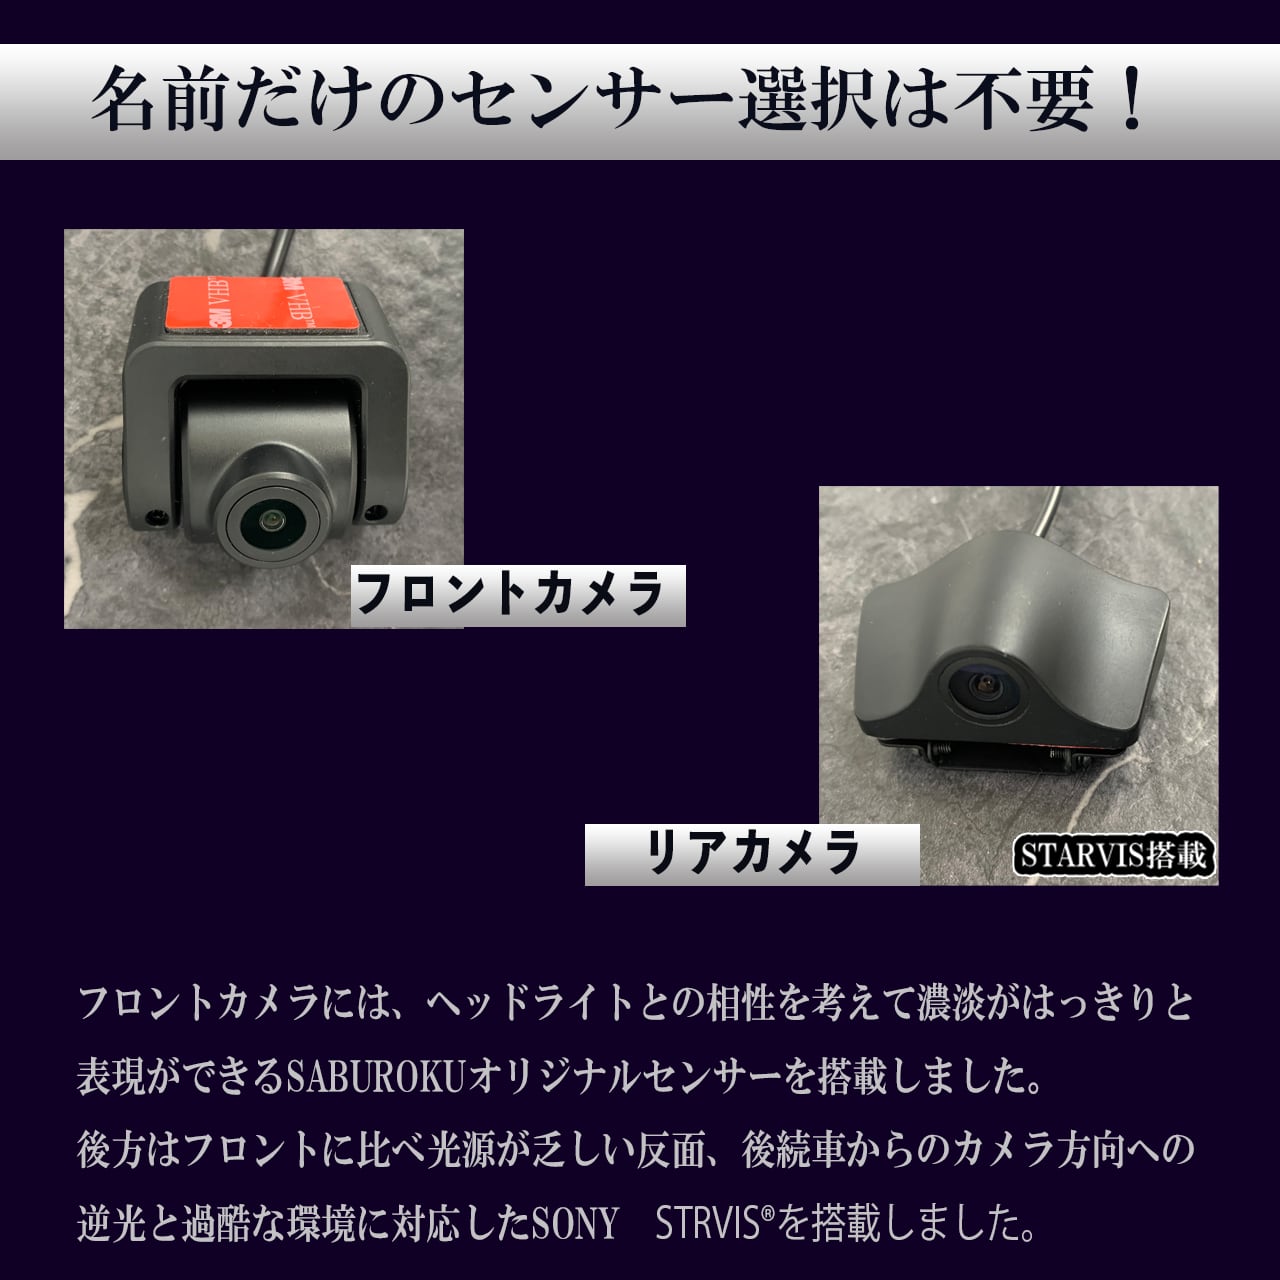 200系ハイエース専用『DRMR780-ZOOM-200HI』 | saburoku-system online store powered by  BASE